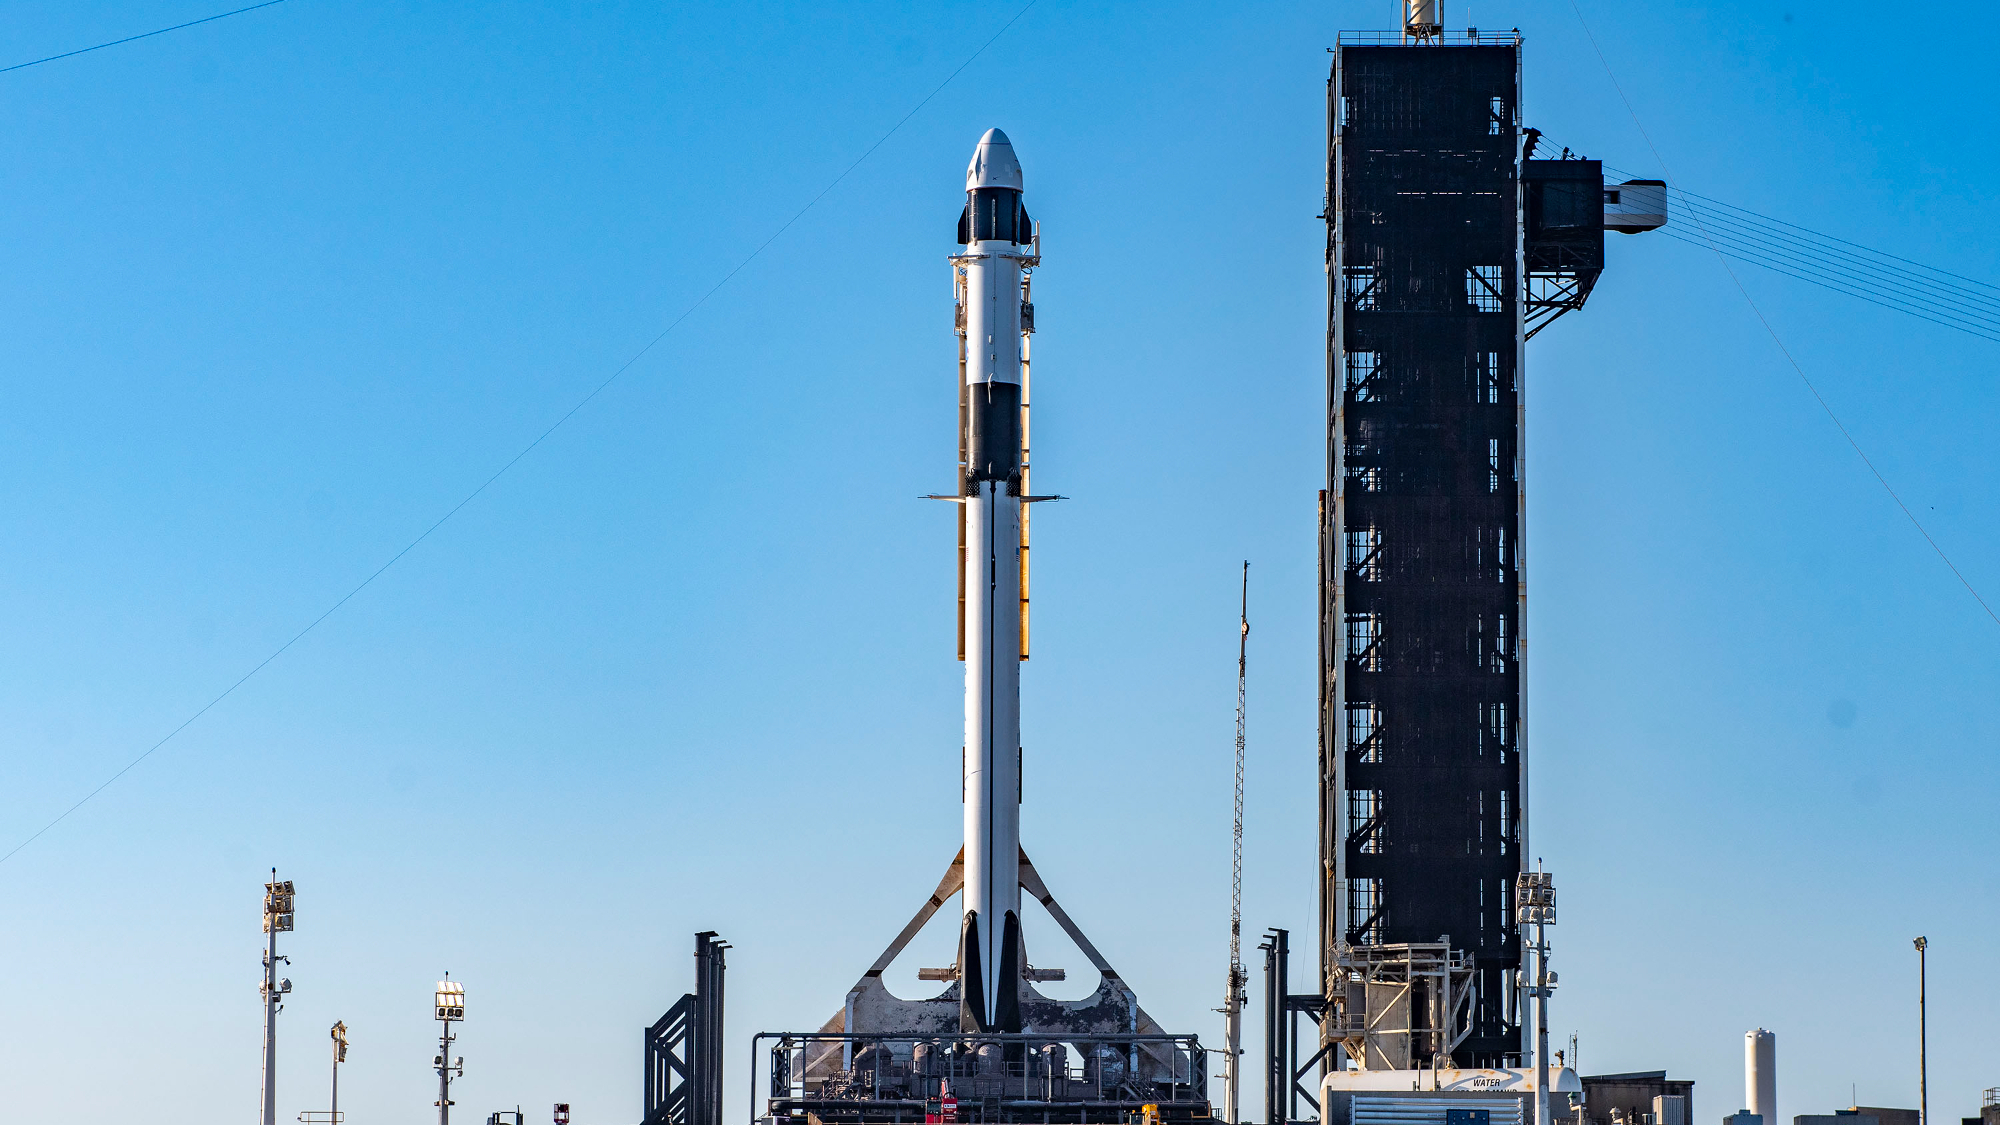 Roket hitam putih di atasnya dengan kapsul putih berdiri di landasan peluncuran dengan langit biru di latar belakang.